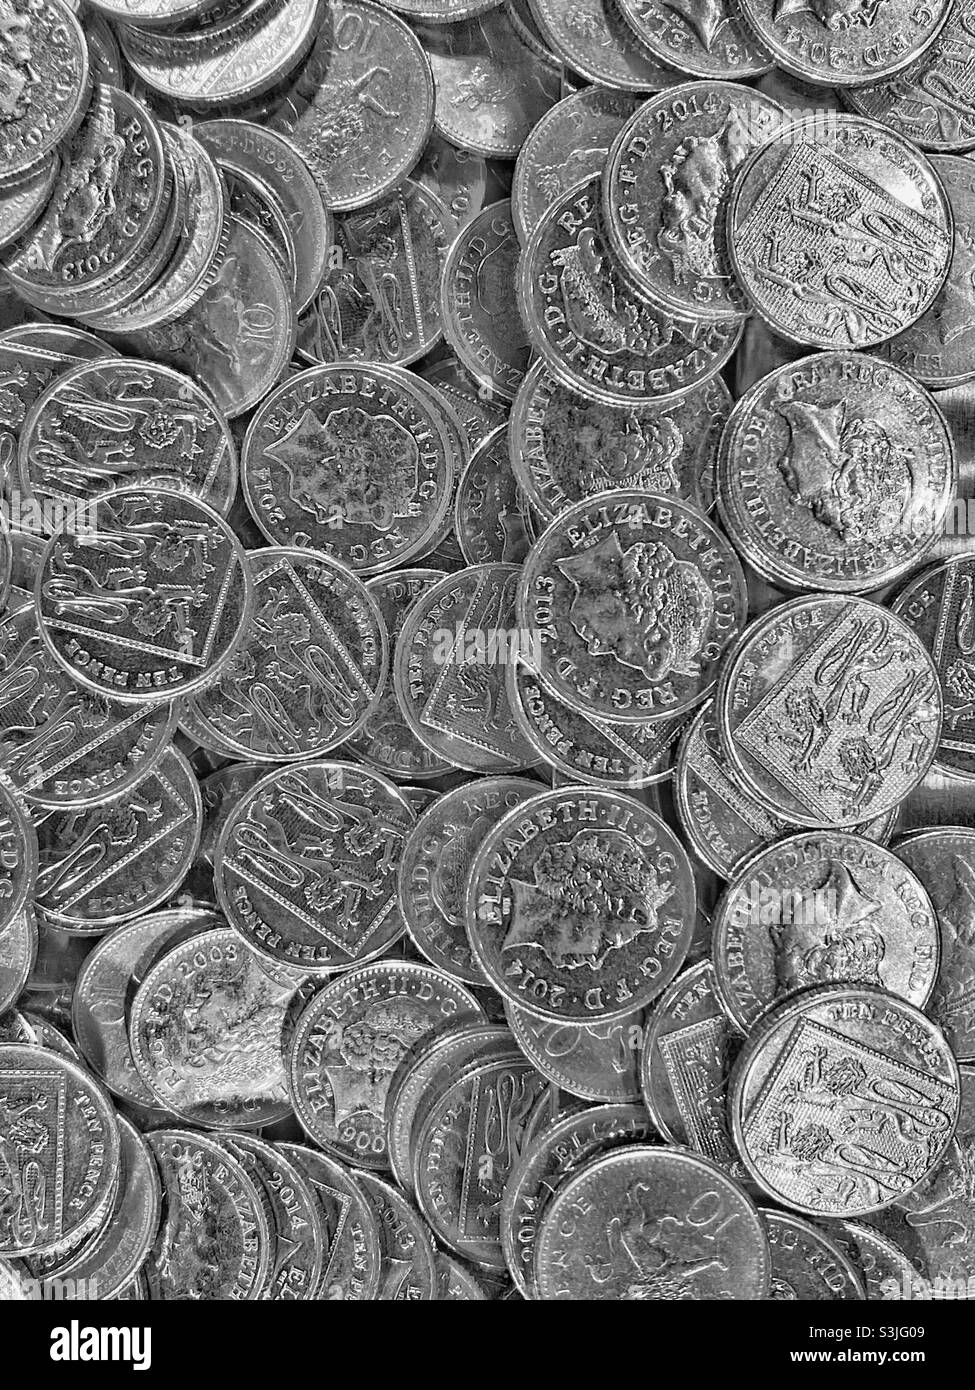 Una collezione di monete inglesi d'argento da 10 pence. Uno spettacolo comune in banche, casinò e giochi arcade. Il ritratto della regina Elisabetta II è su un lato. Photo Credit - ©️ COLIN HOSKINS. Foto Stock